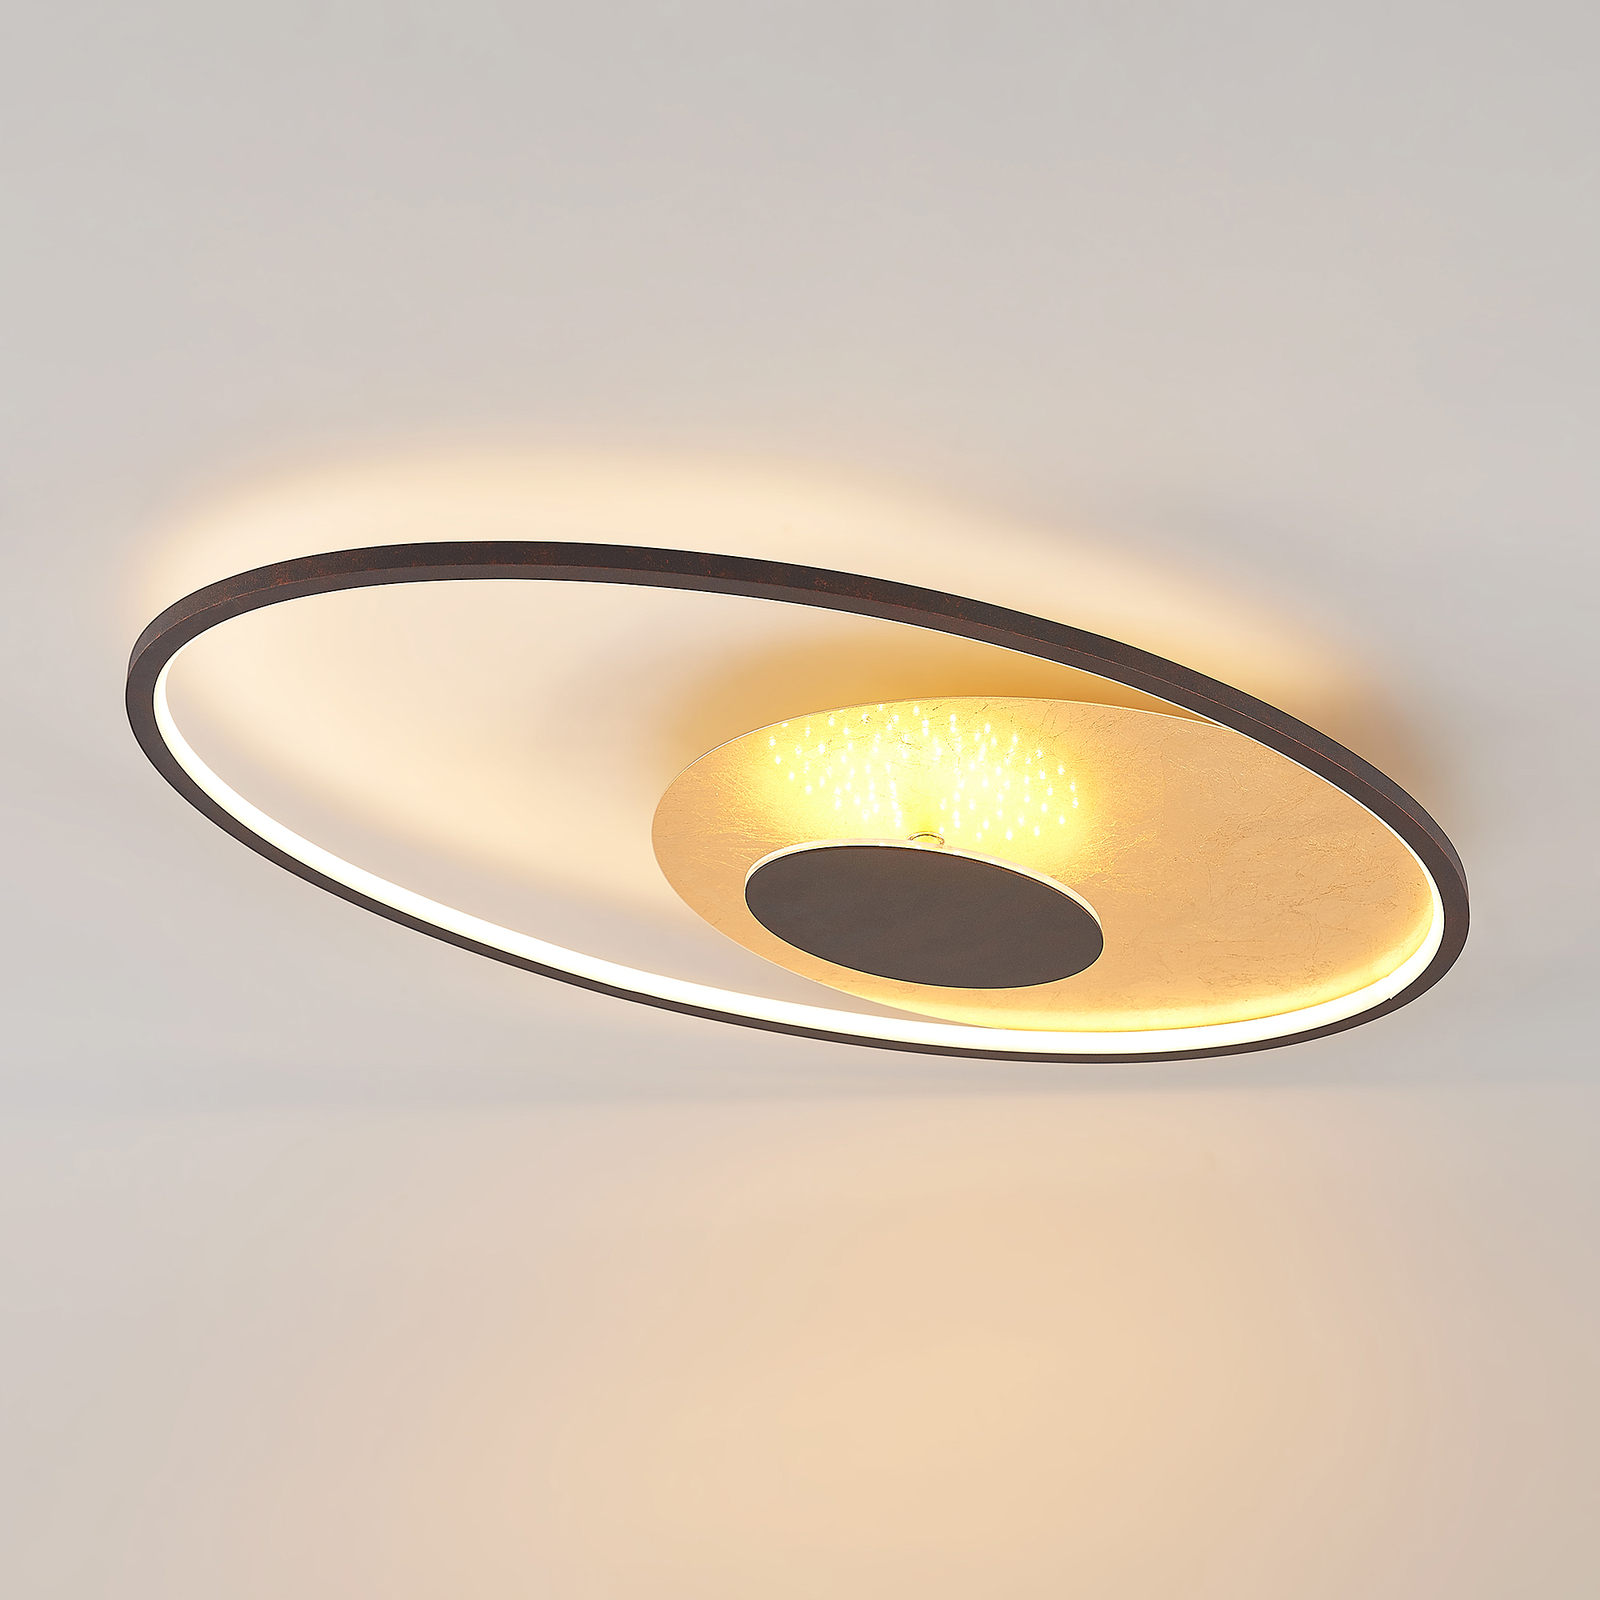 Lindby Feival LED ceiling light, 73 cm x 43 cm